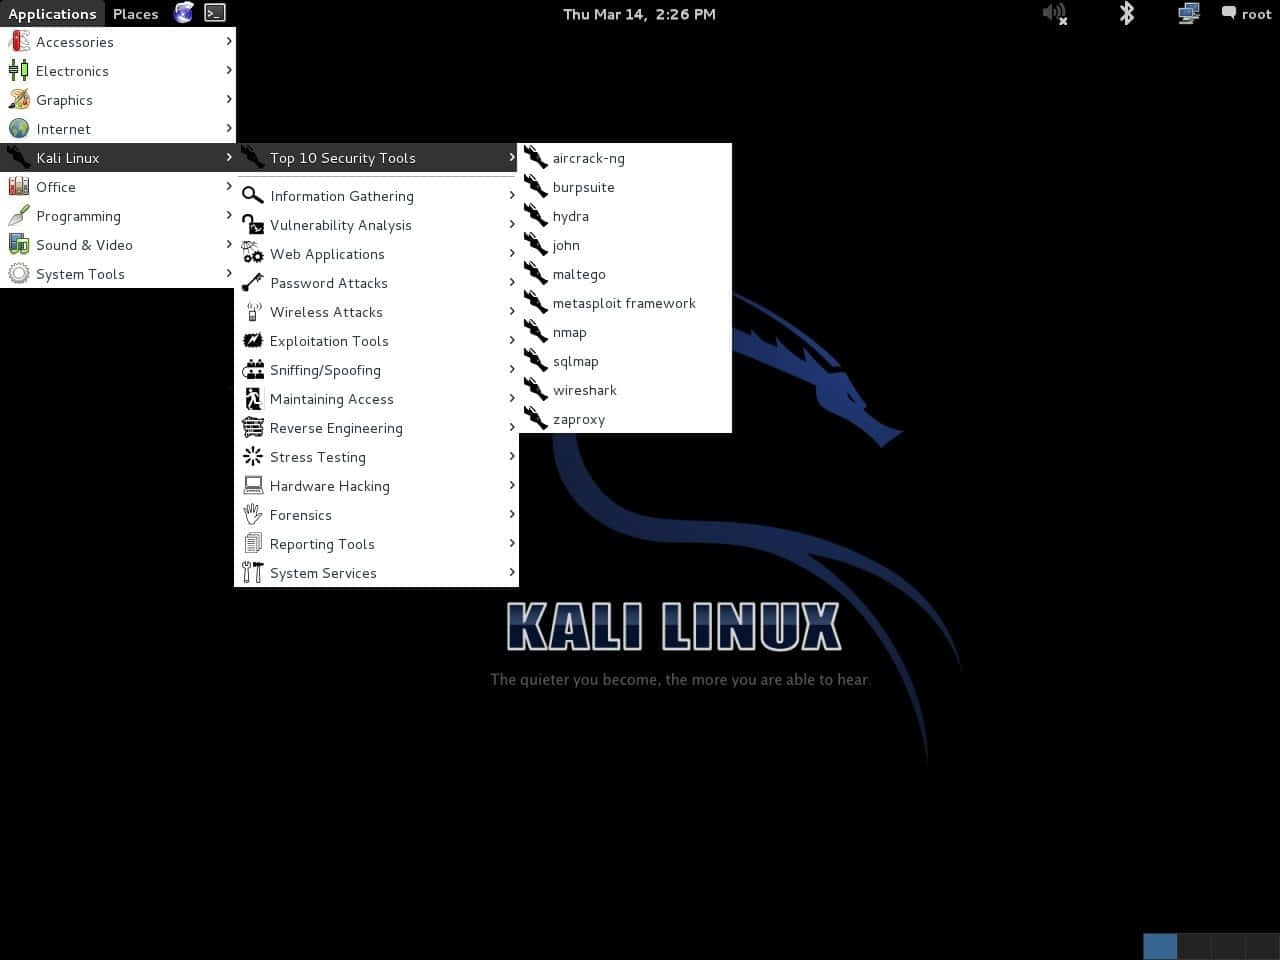 Smukke baggrundsbilleder af Kali Linux.